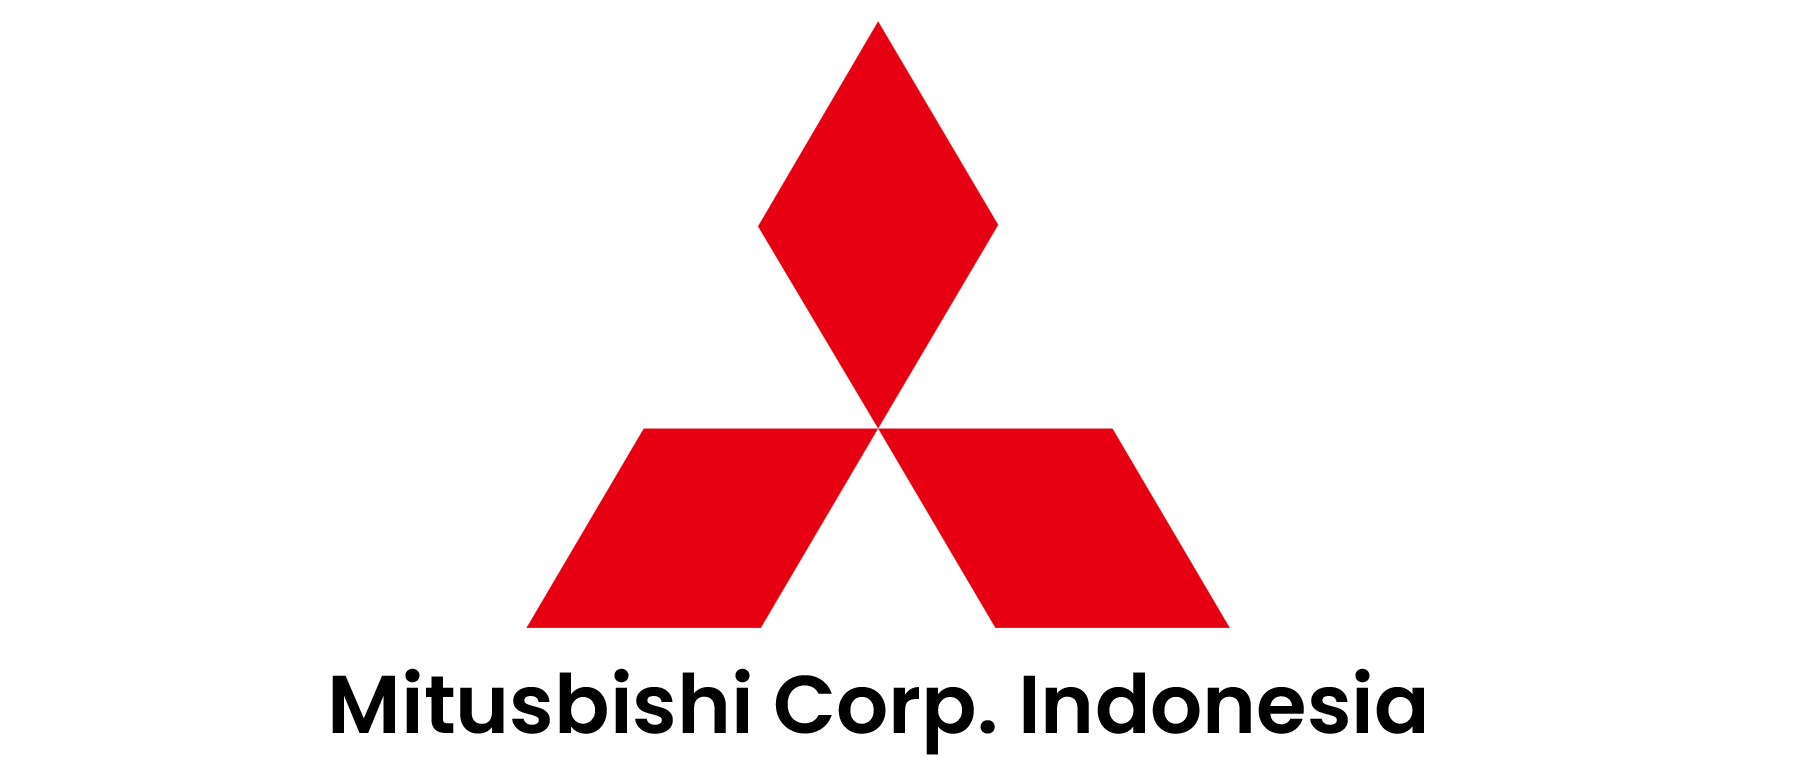 Logo mitsubishi